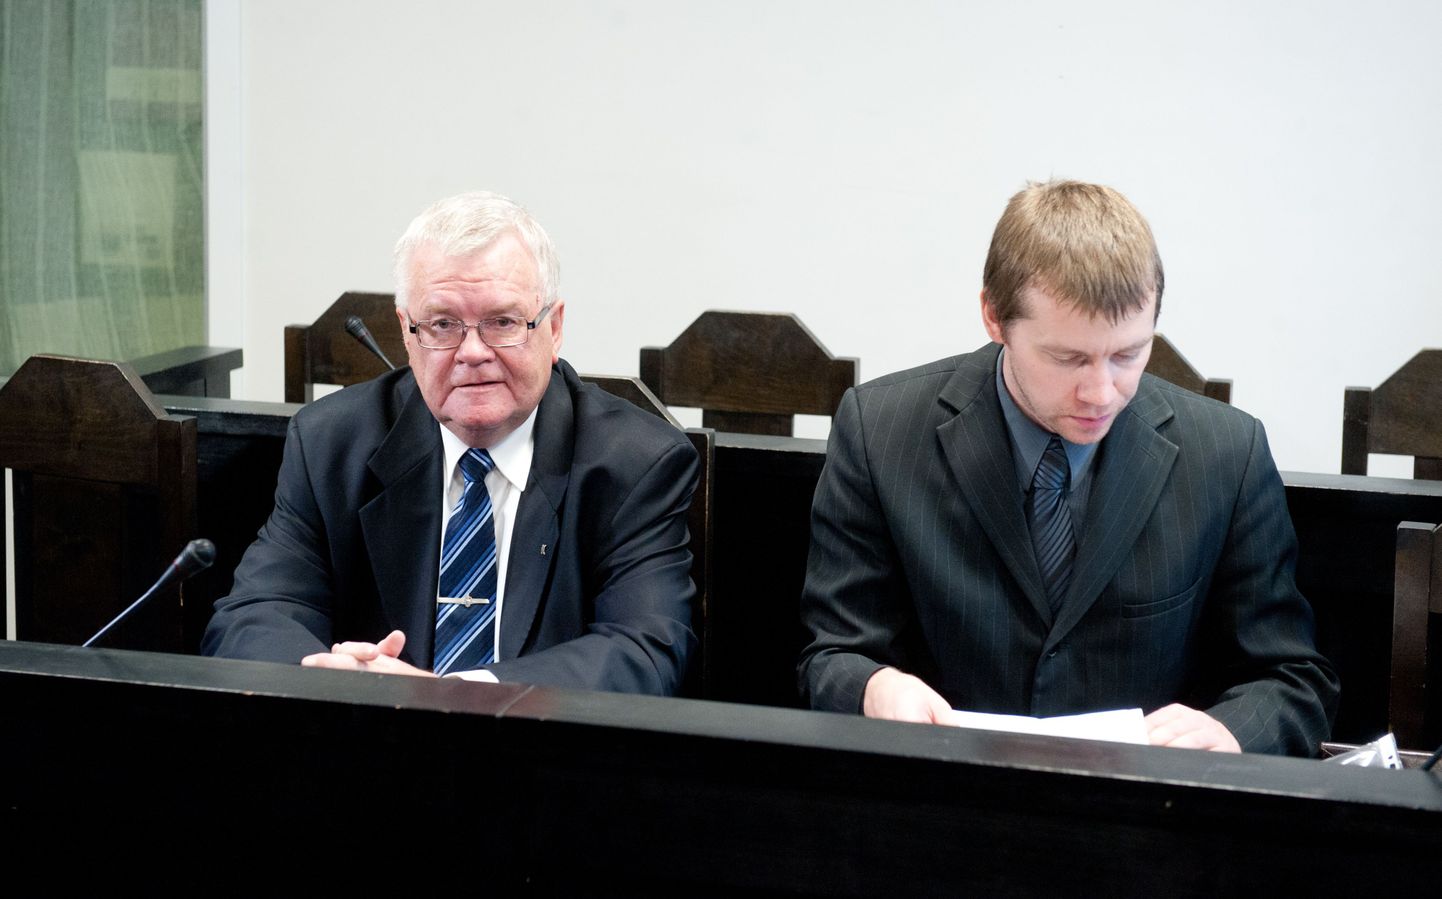 Edgar Savisaar 2012. aastal kohtus, kui ta vaidlustas saadud liiklustrahvi. Harju maakohus tühistas Tallinna linnapeale määratud liiklustrahvi ja nõudis tema advokaadikulud sisse riigilt.